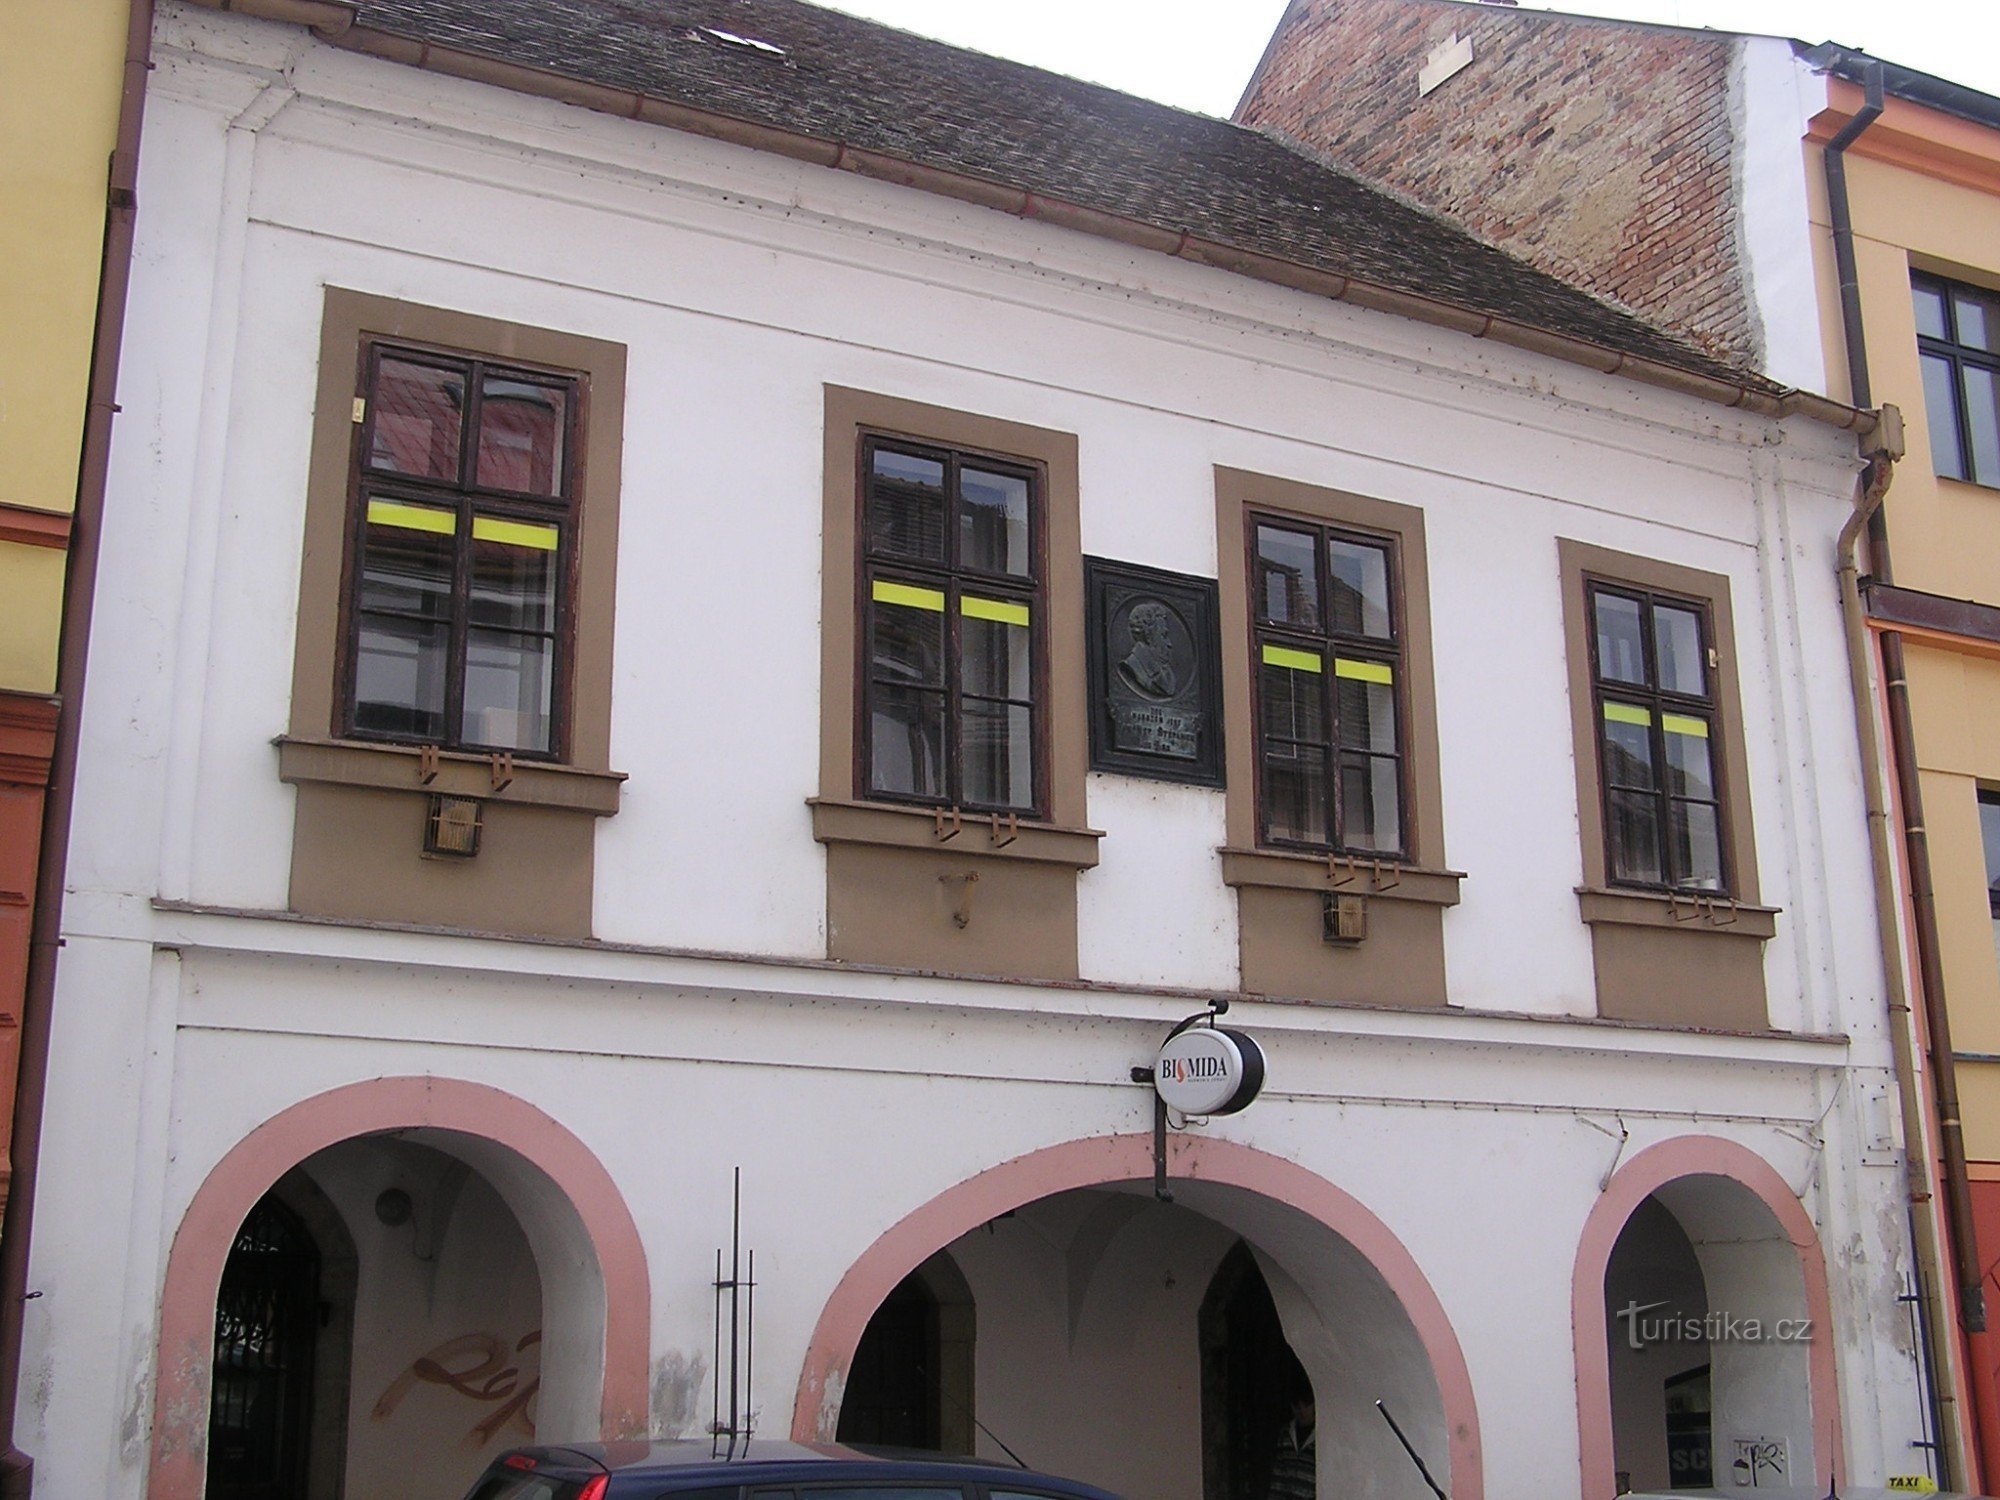 Birthplace of JNŠtěpánek